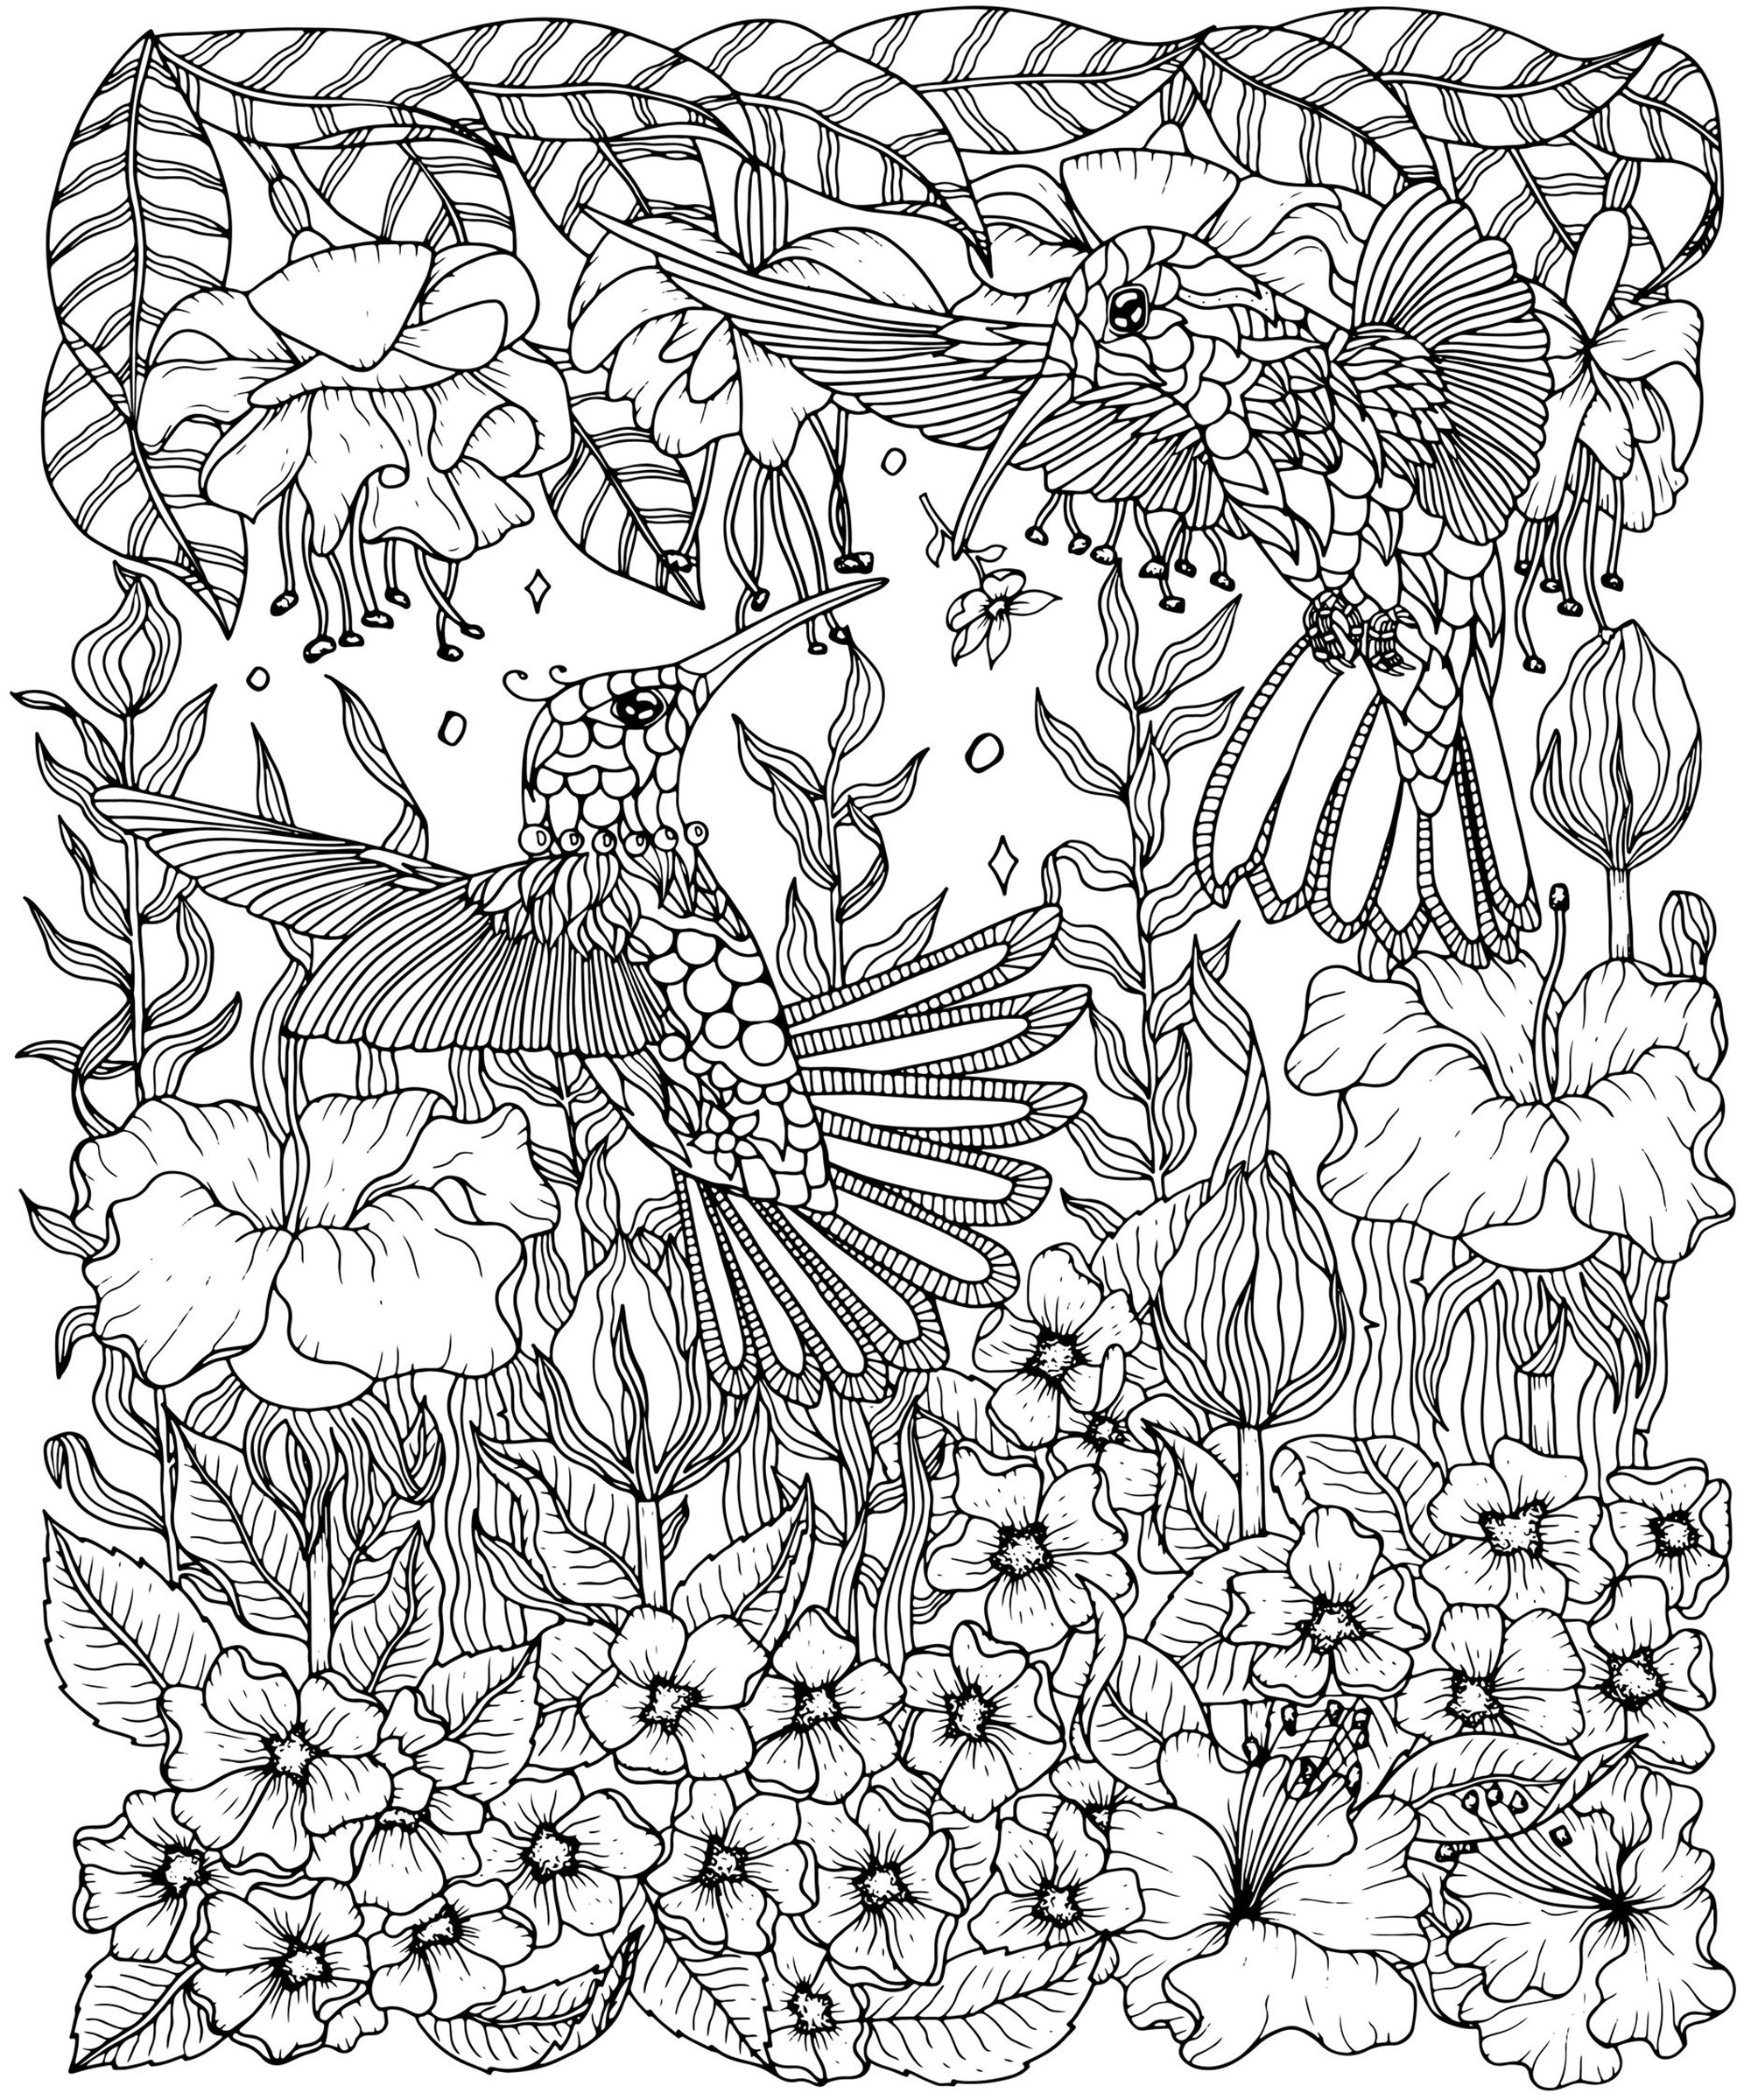 Colora estes belos colibris com flores complexas e de vários tipos, Artista : Svetlana Malysheva   Fonte : 123rf